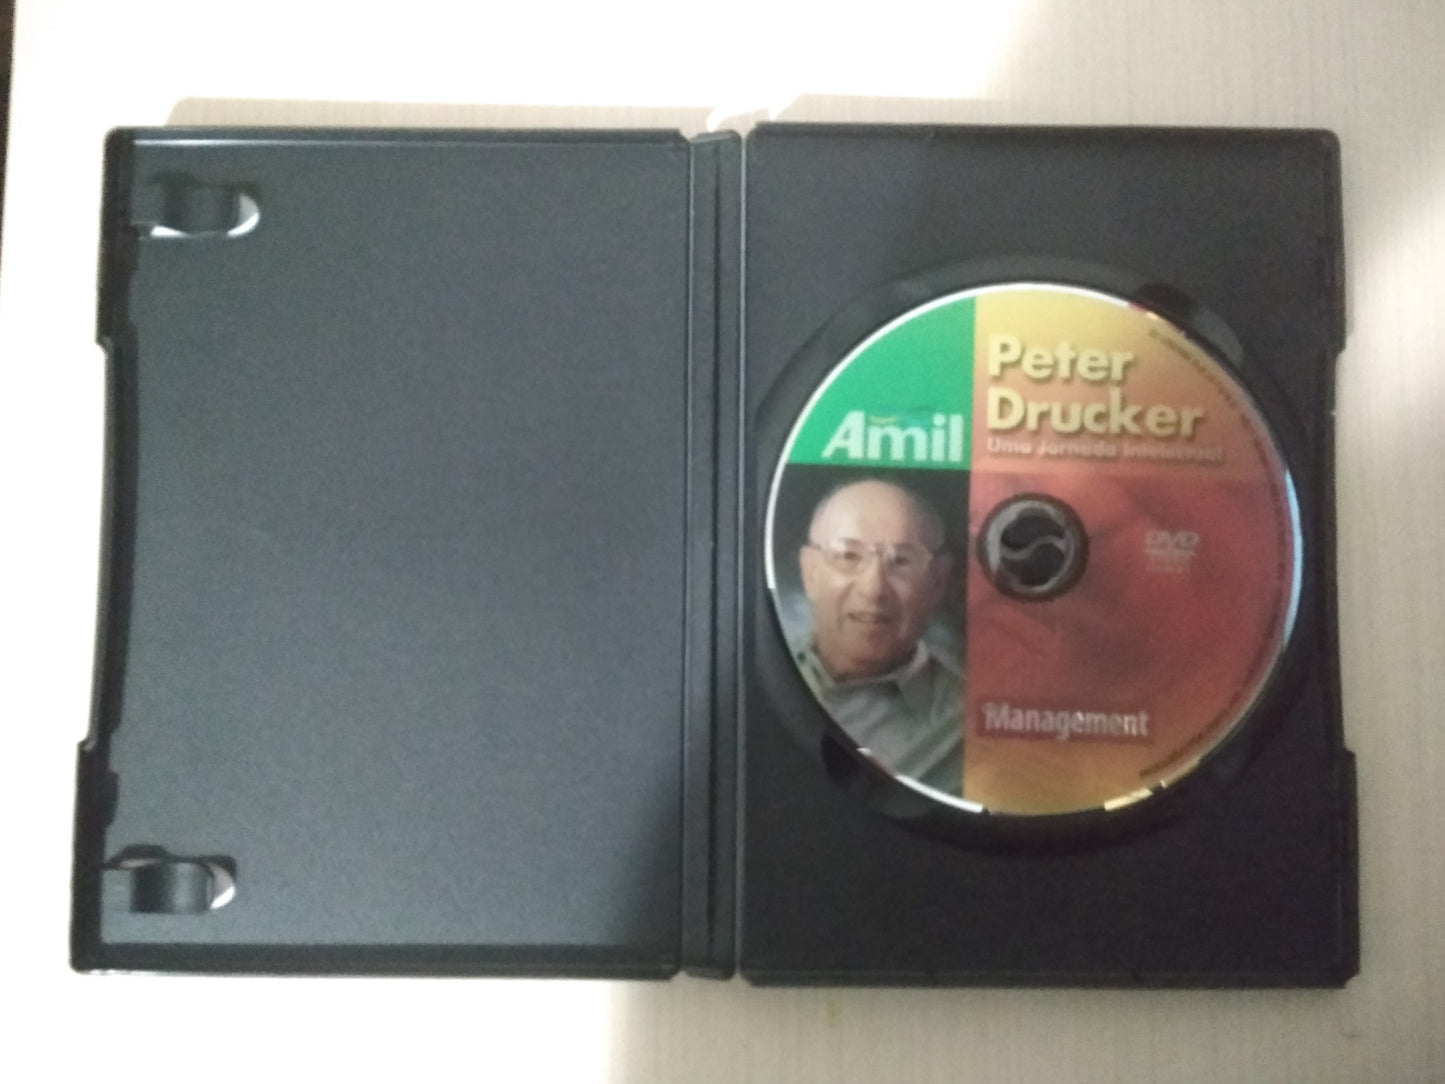 DVD Peter Drucker Uma Jornada Intelectual